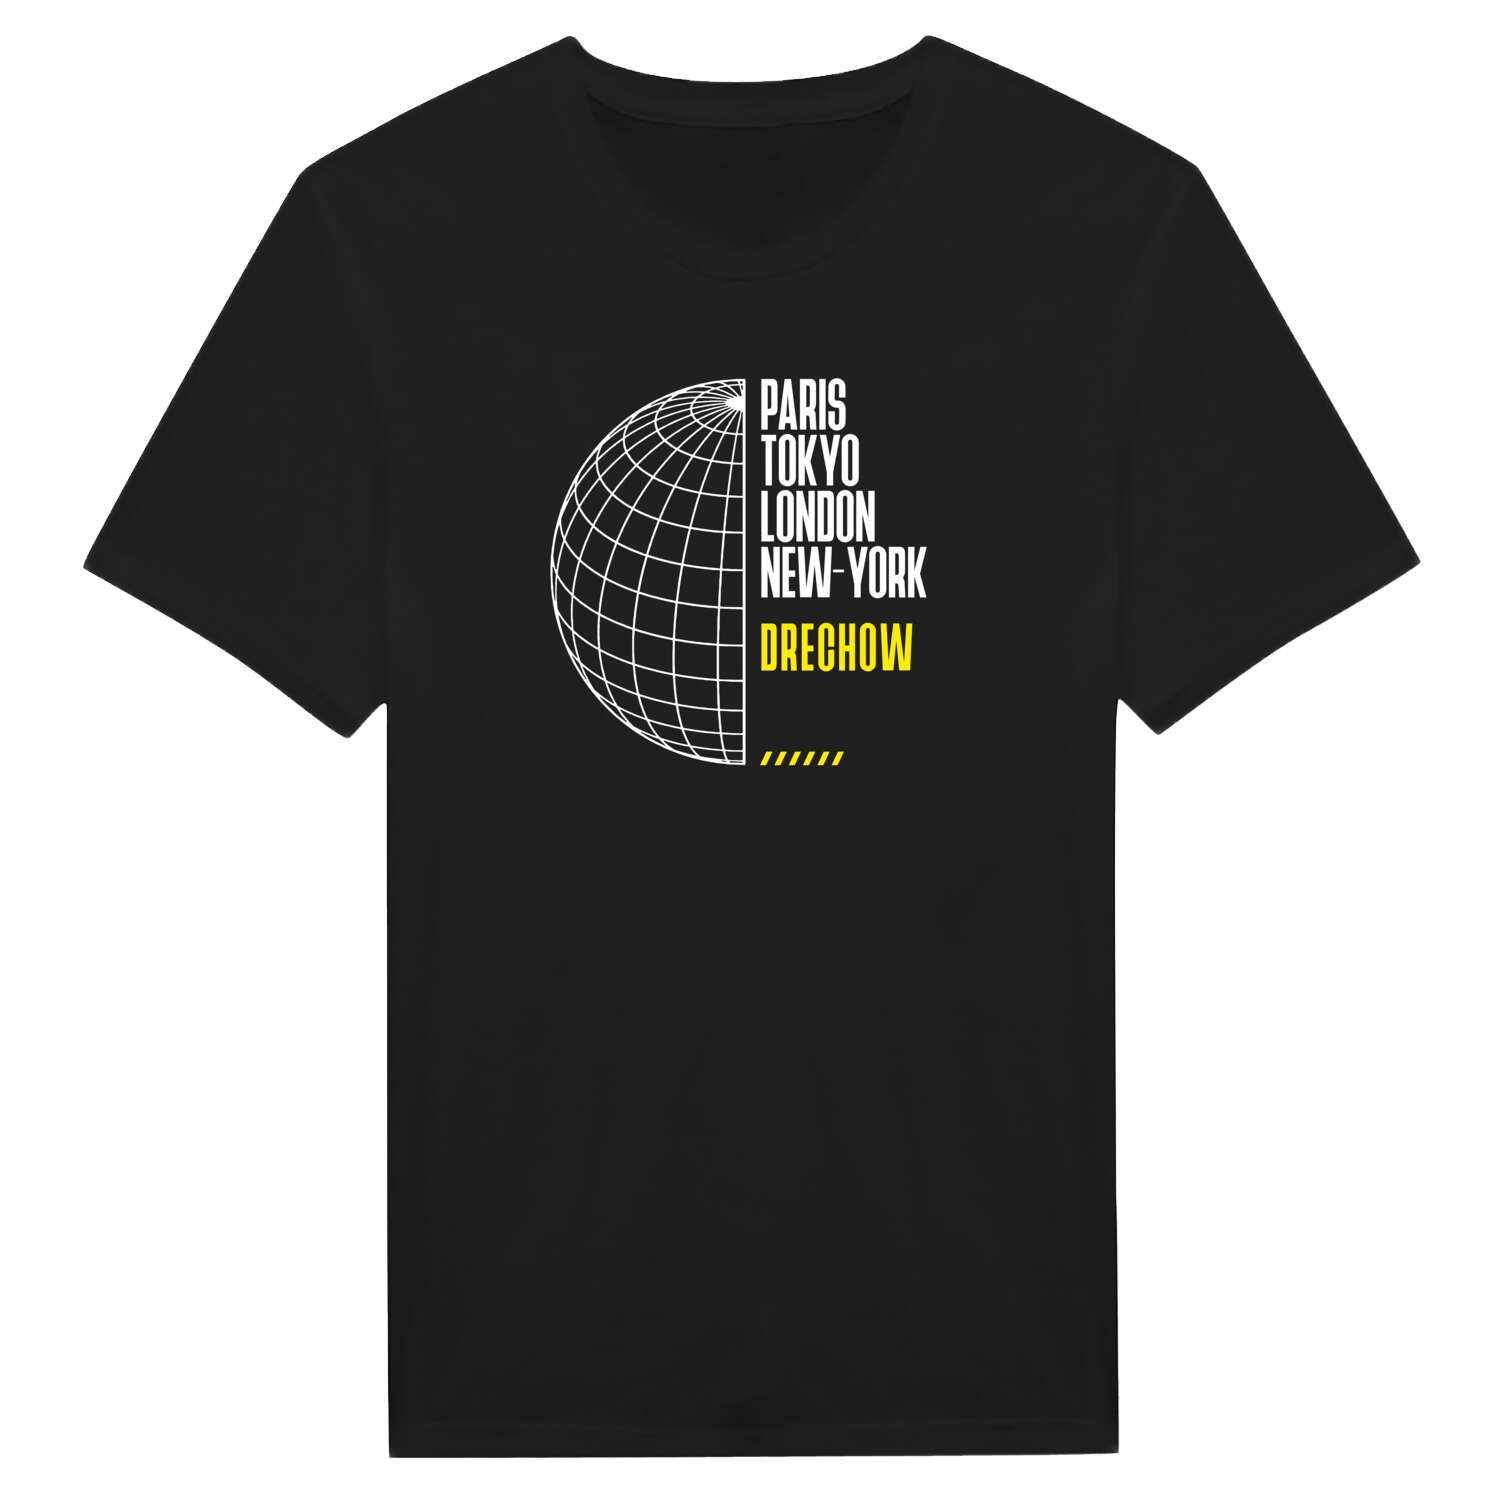 Drechow T-Shirt »Paris Tokyo London«